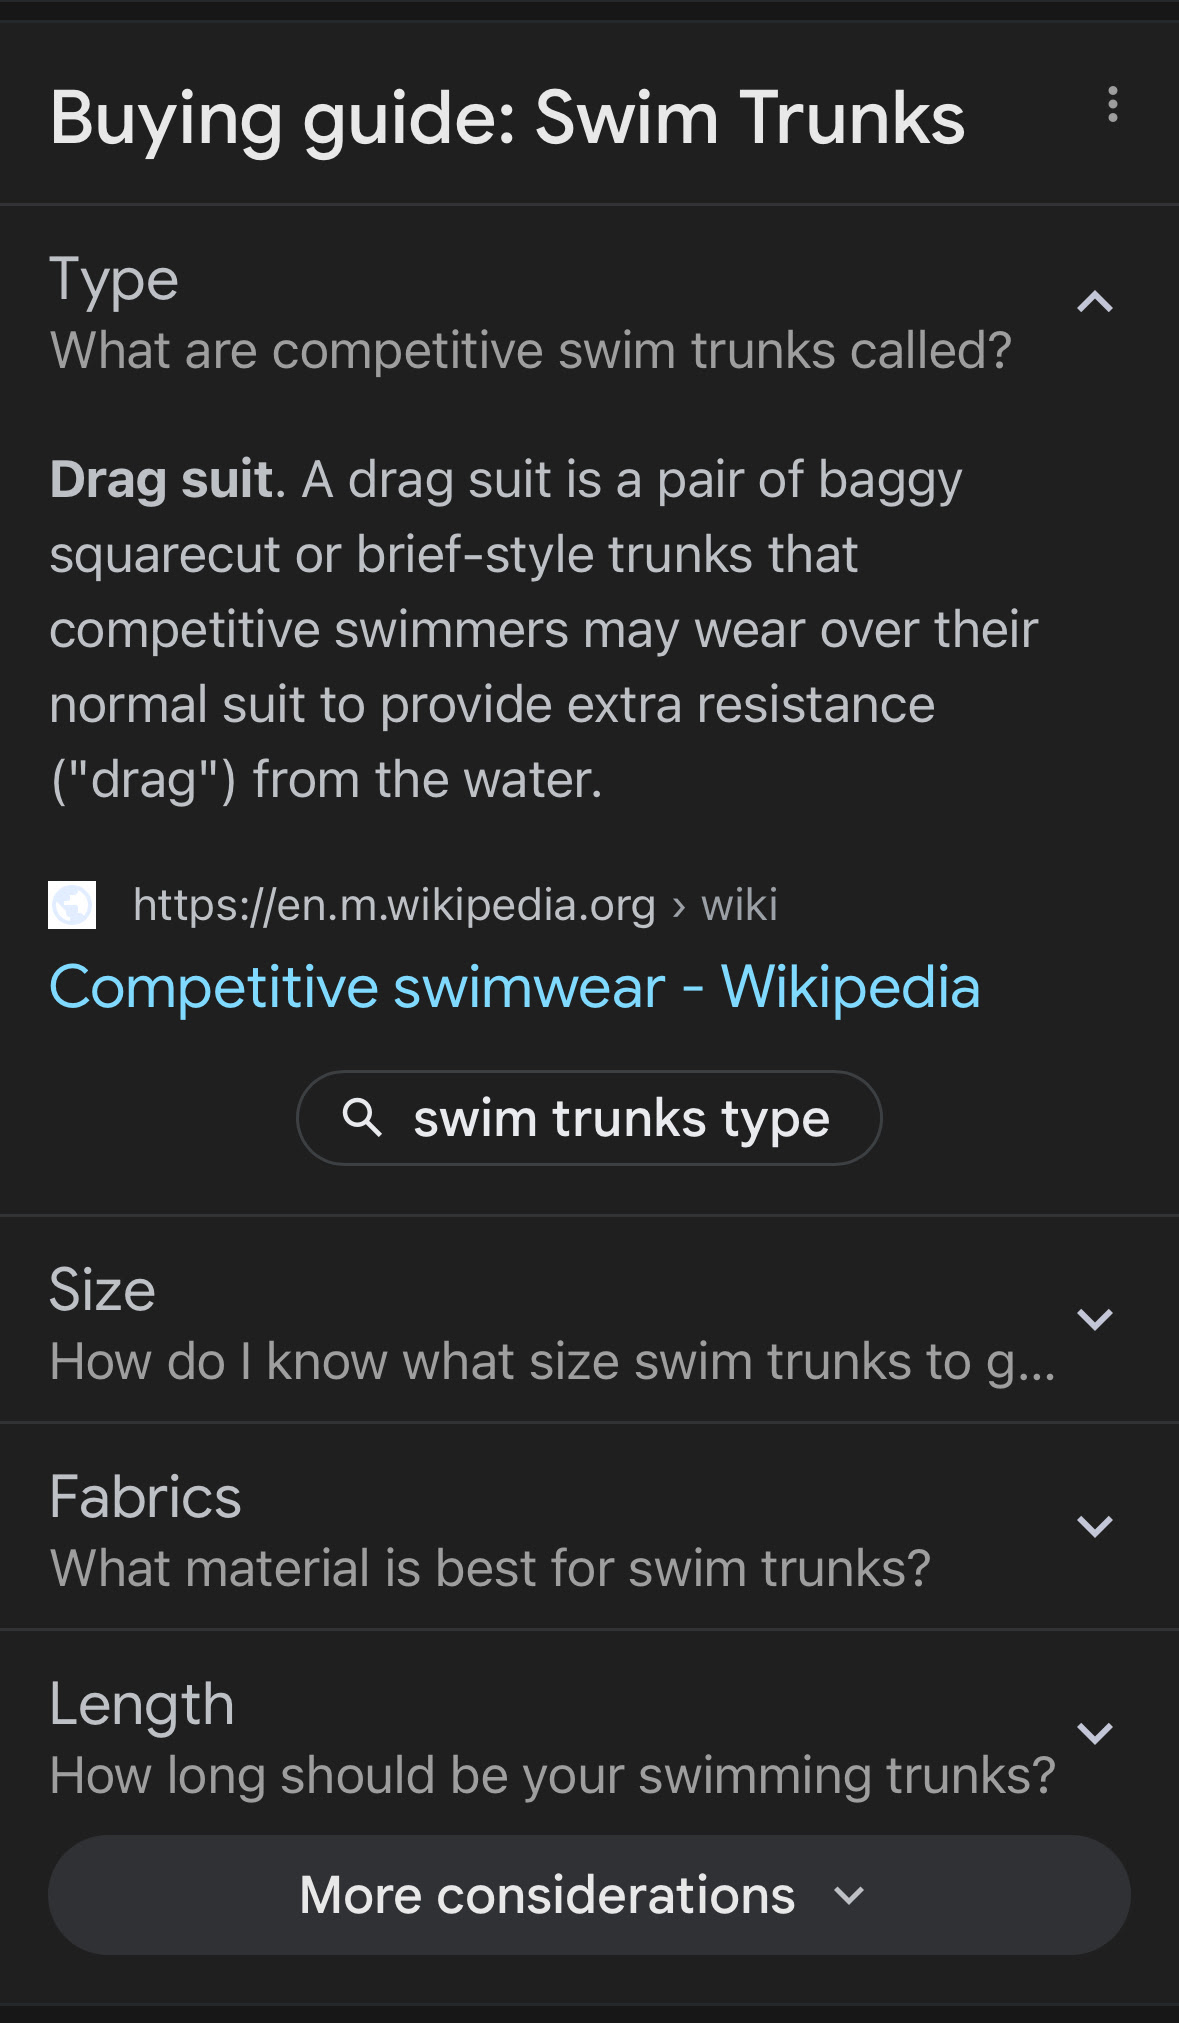 Competitive swimwear - Wikipedia